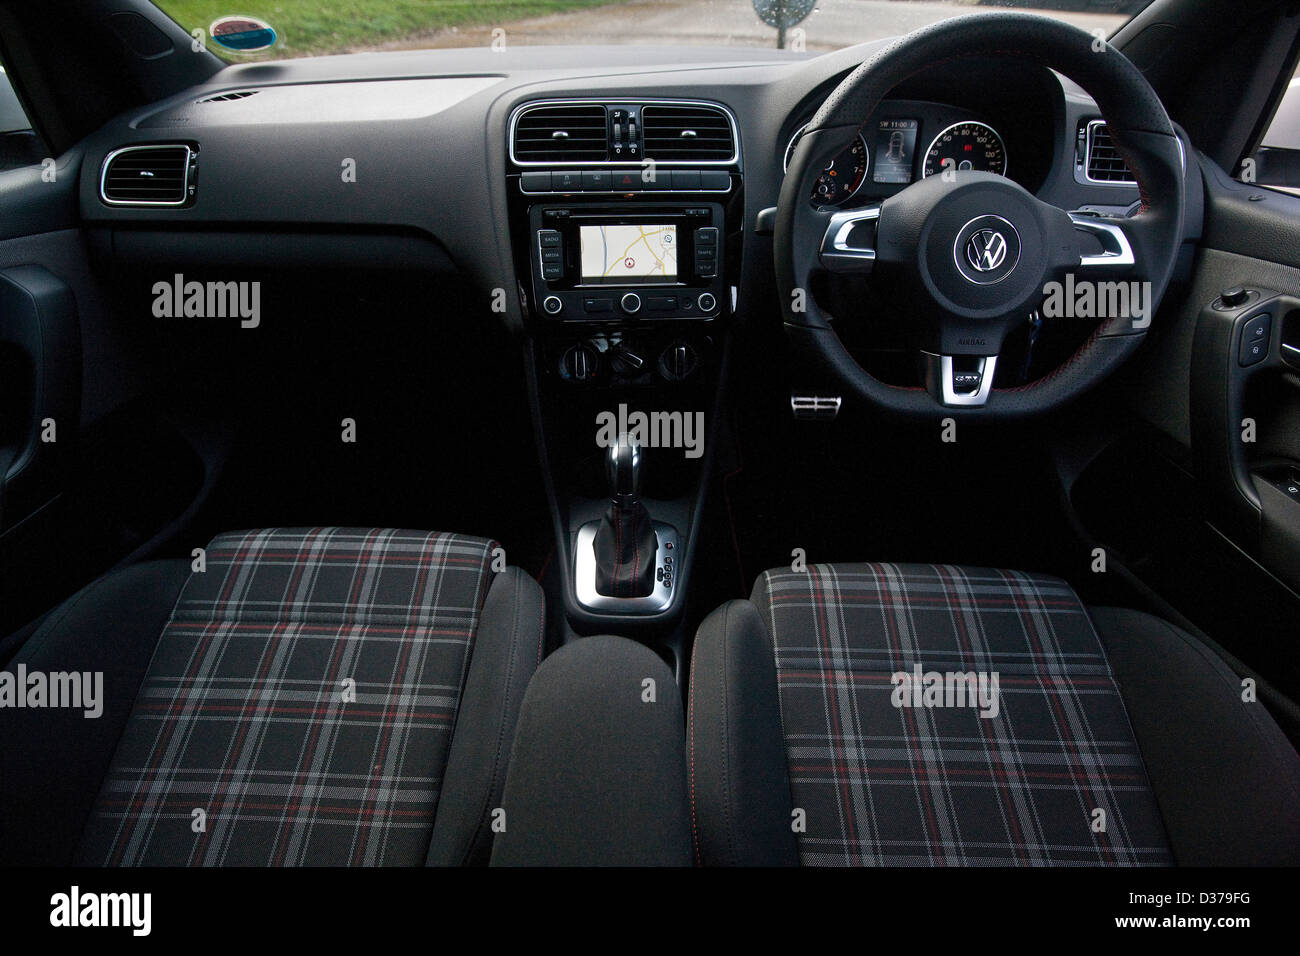 Sedili conducente e passeggero con il volante in VW Volkswagen Polo GTI,  Winchester, Inghilterra, 15 03 2011 Foto stock - Alamy